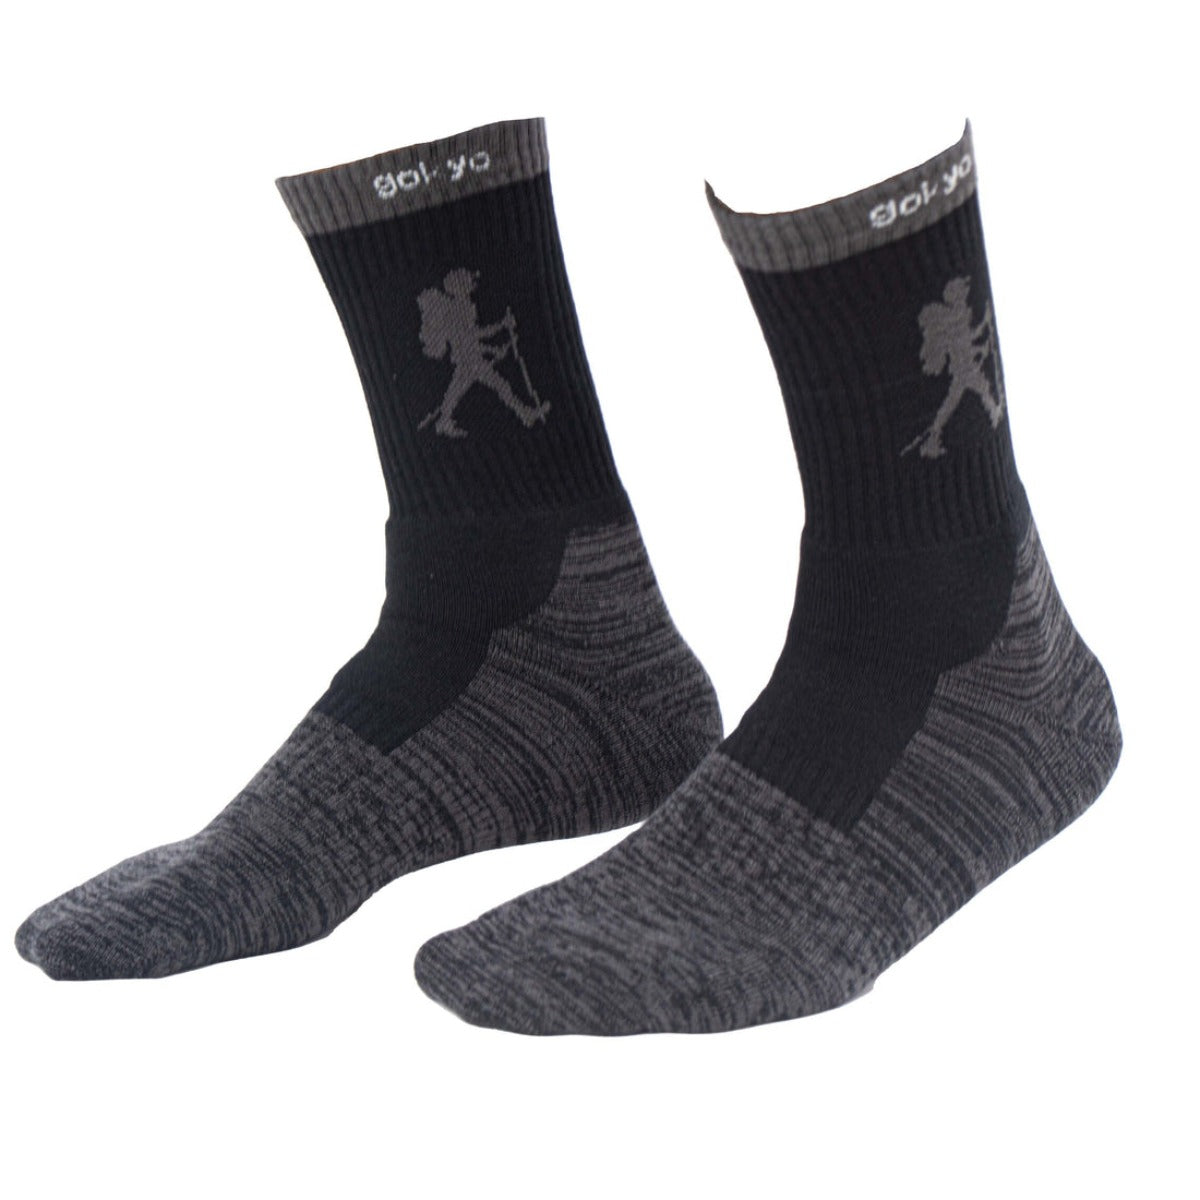 Trekking Socks - Alpine Series - Pack of 2 Pairs 1